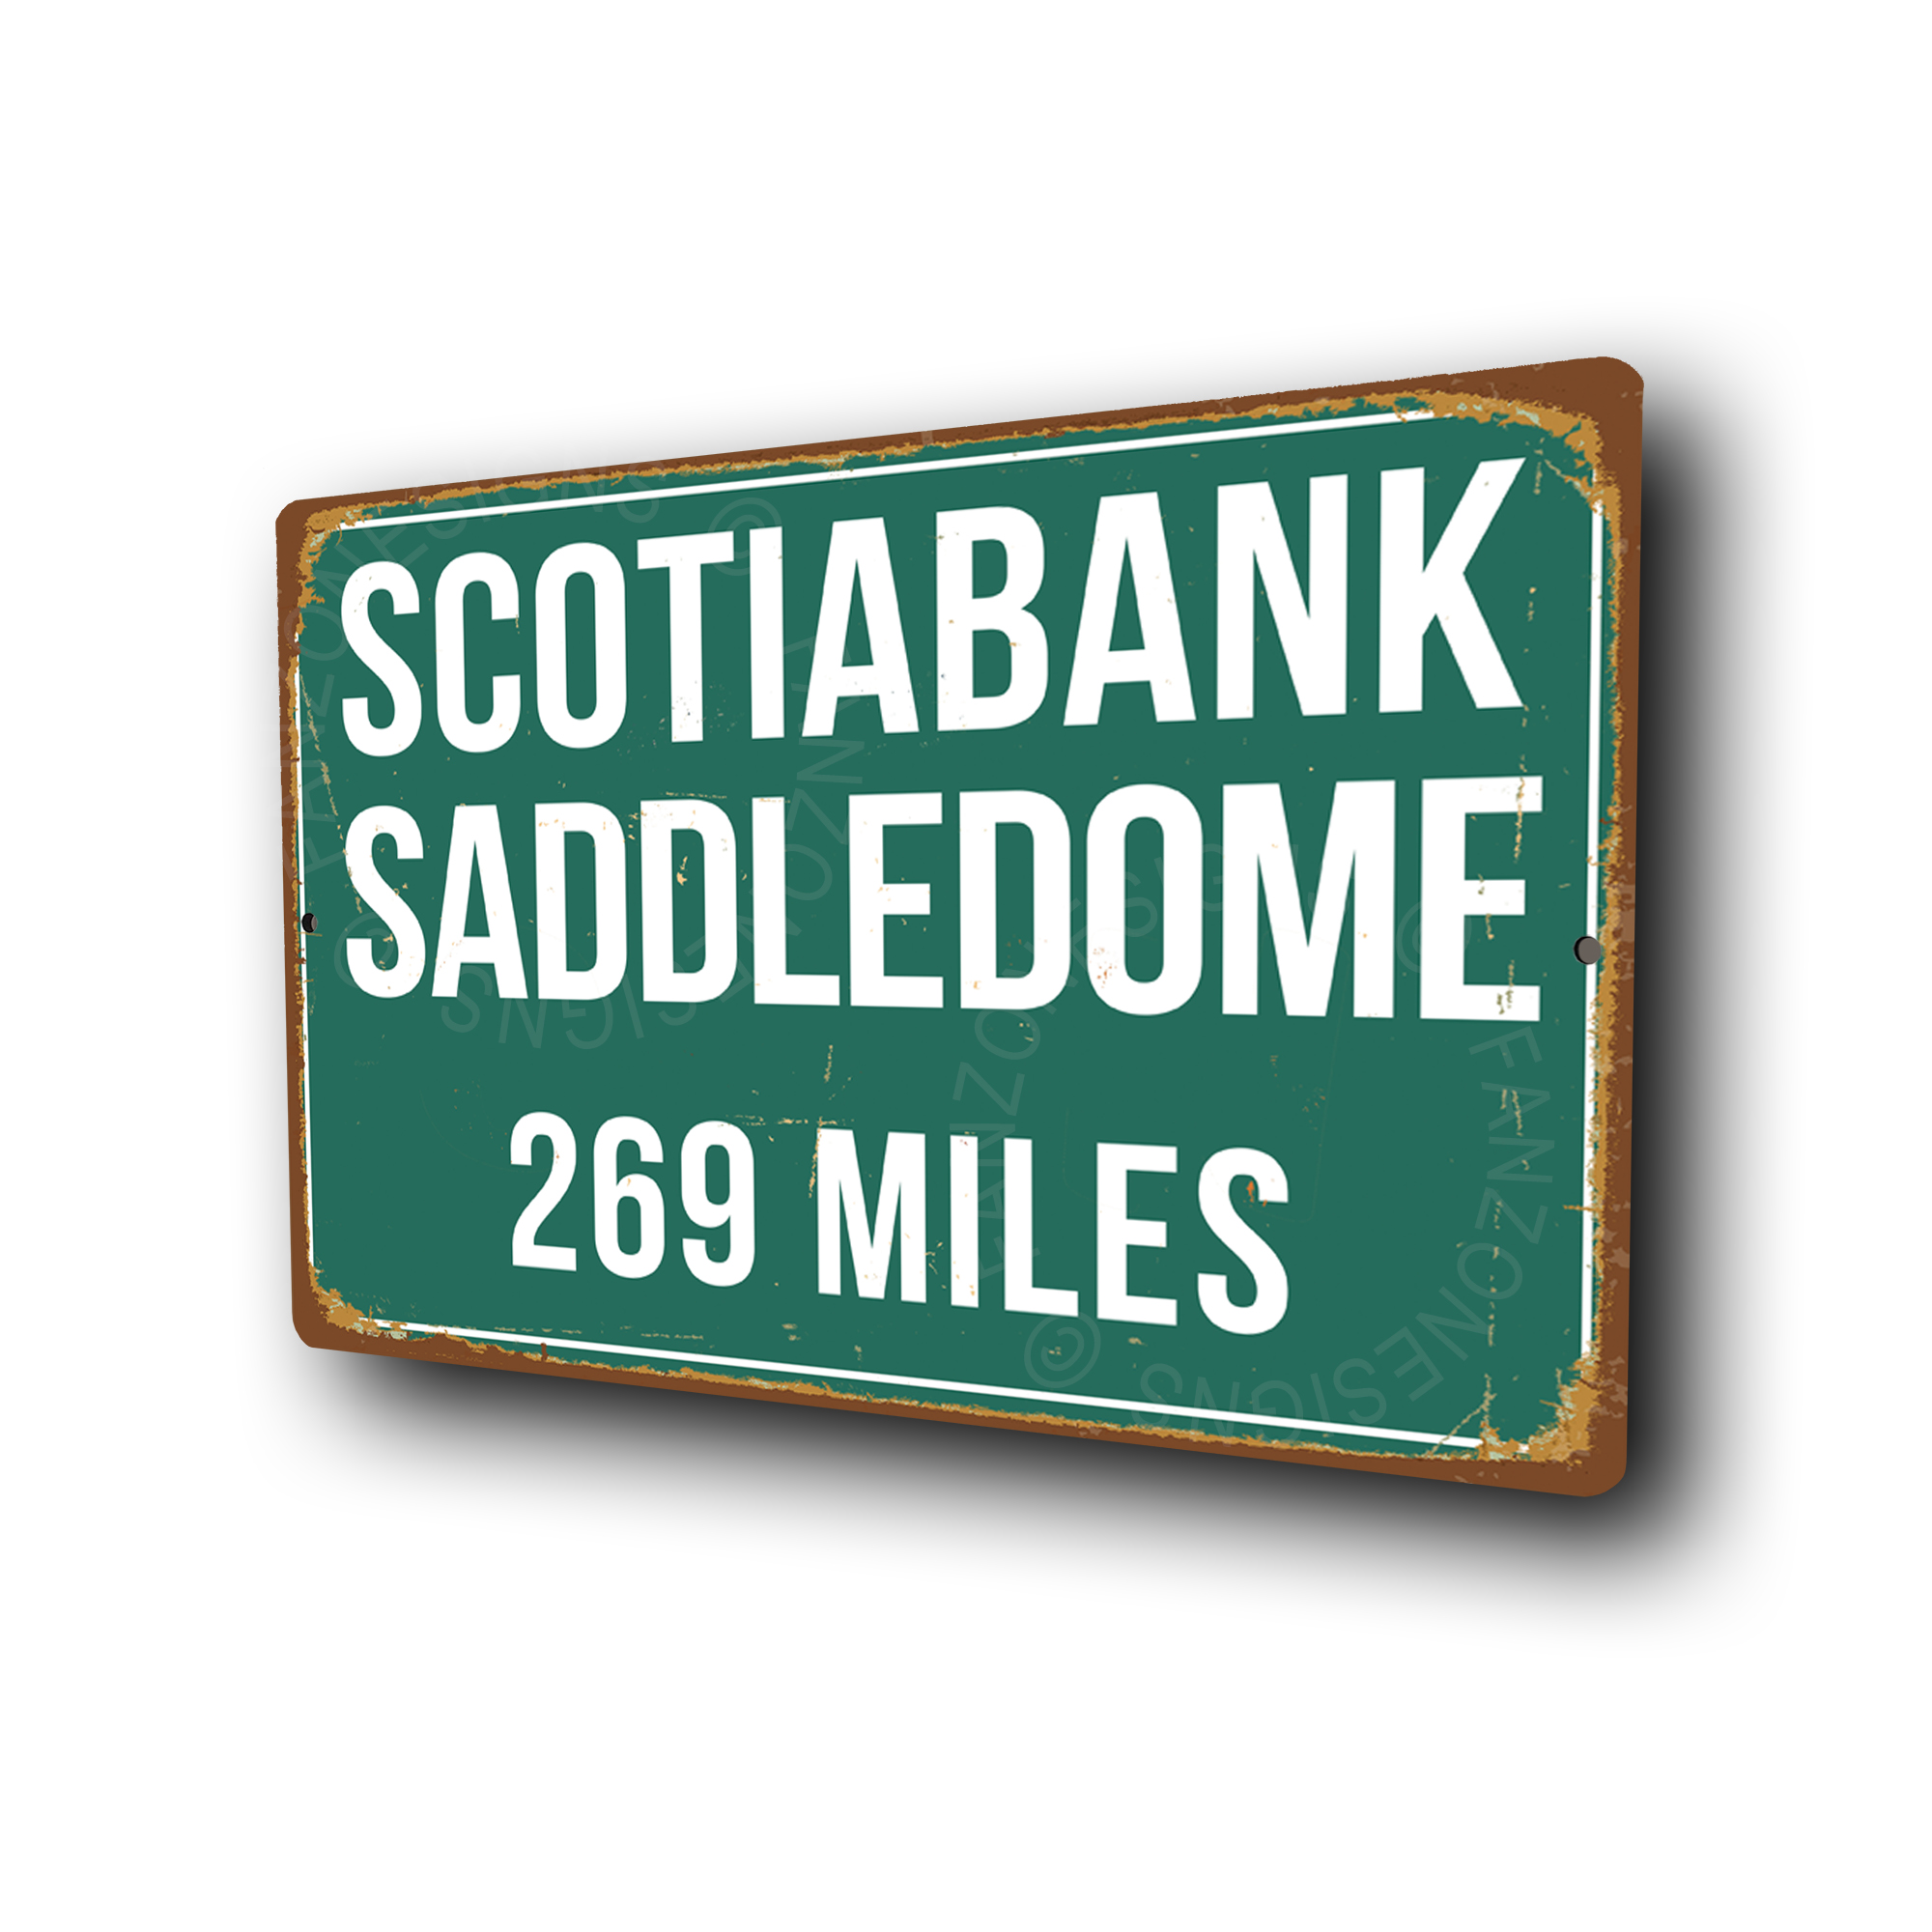 Scotiabank Saddledome Sign